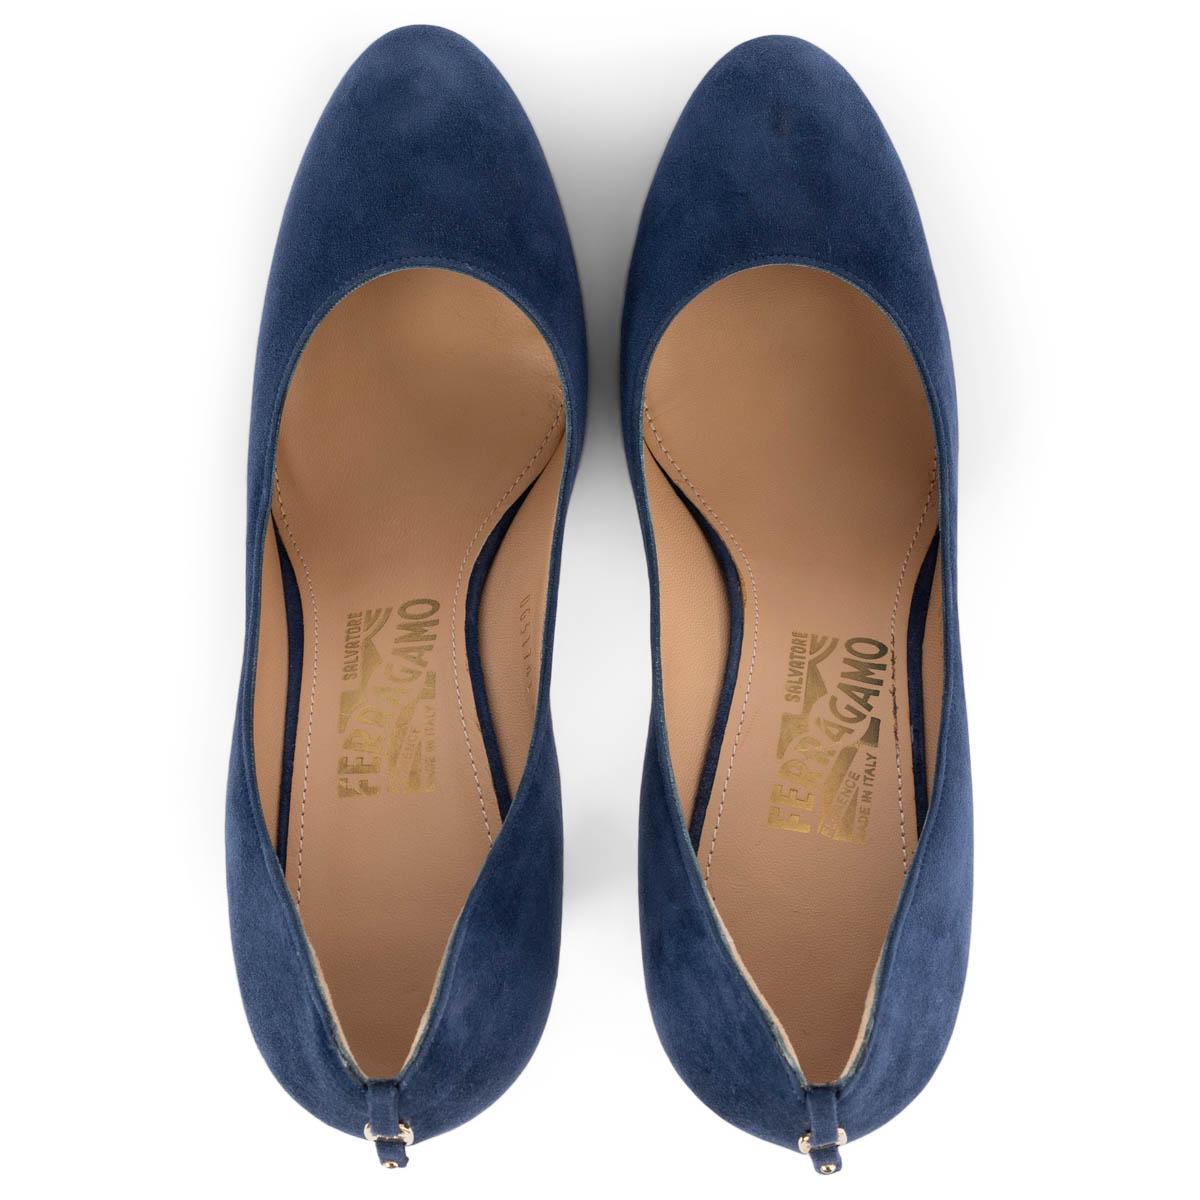 SALVATORE FERRAGAMO dark blue suede Platform Pumps Shoes 7.5 In Excellent Condition For Sale In Zürich, CH